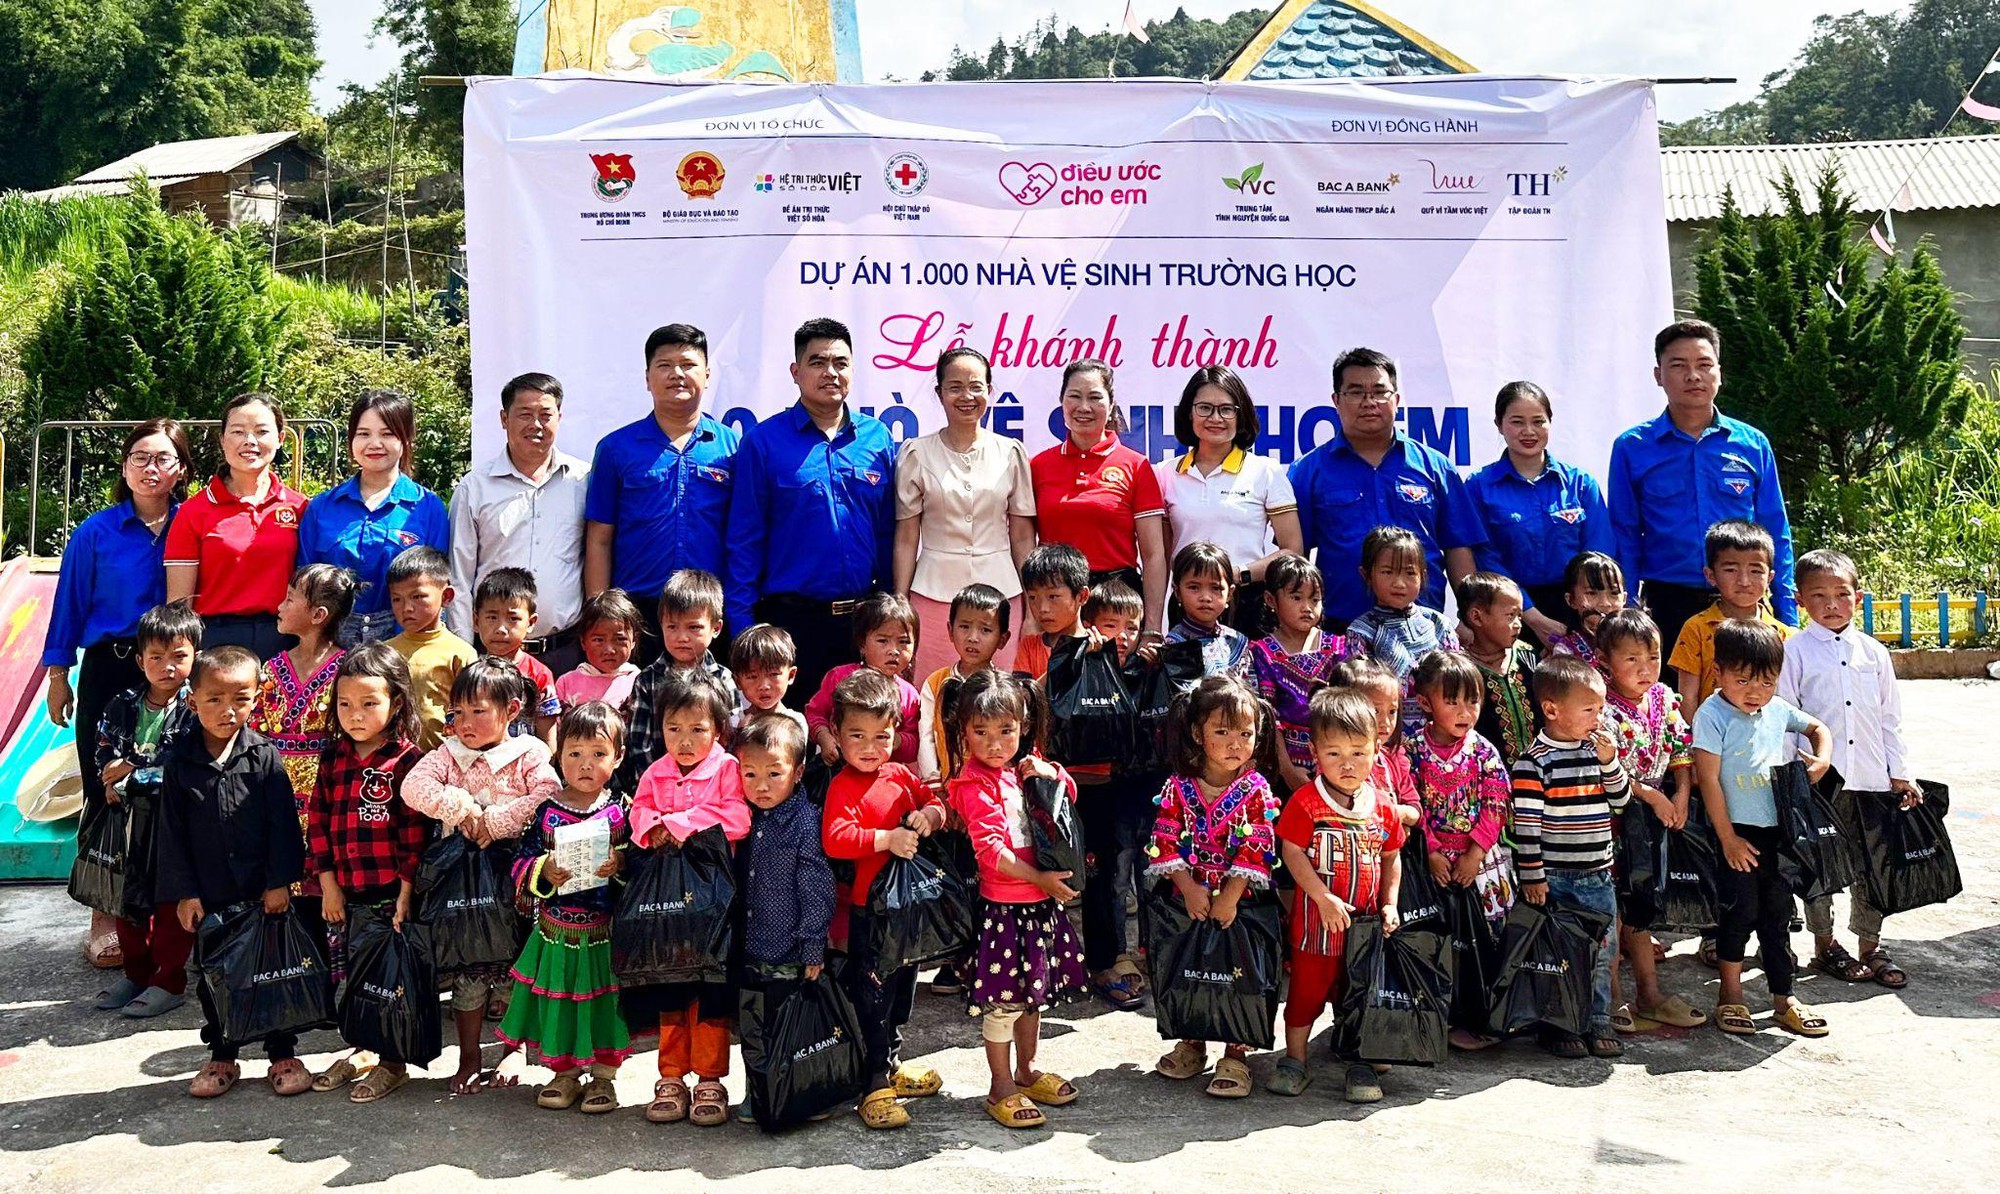 Khánh thành 22 nhà vệ sinh trường học cho học sinh dân tộc thiểu số tại Lào Cai và Lai Châu - Ảnh 1.